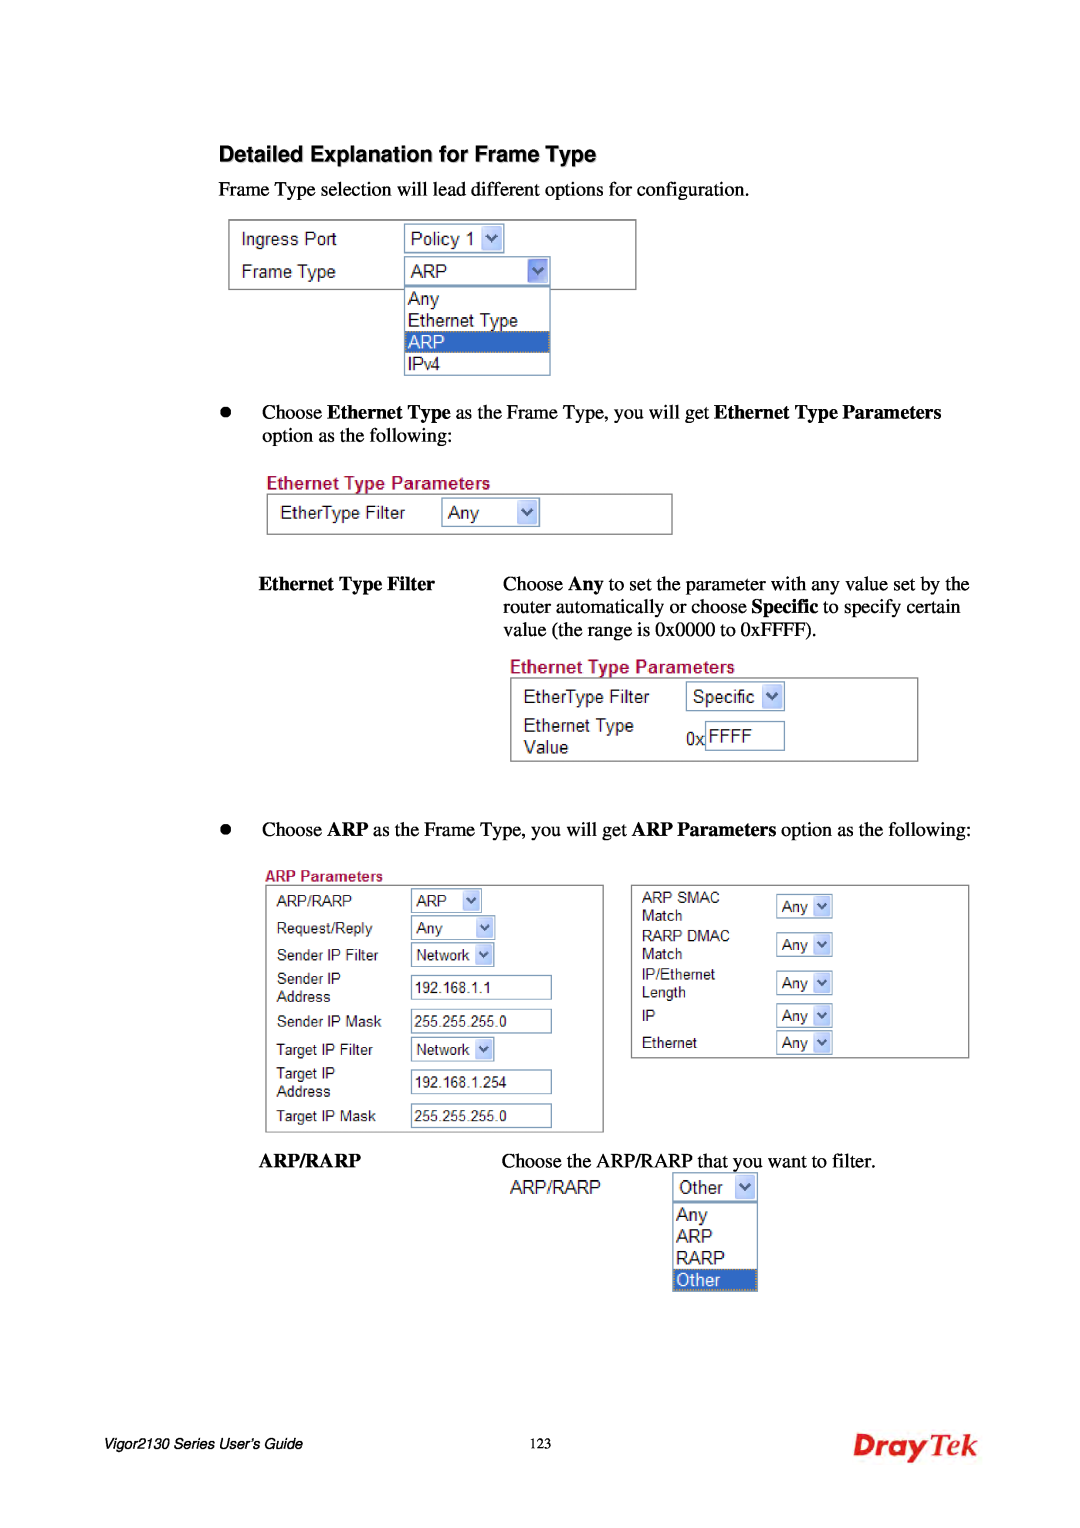 Draytek 2130 manual Detailed Explanation for Frame Type, Ethernet Type Filter, Arp/Rarp 